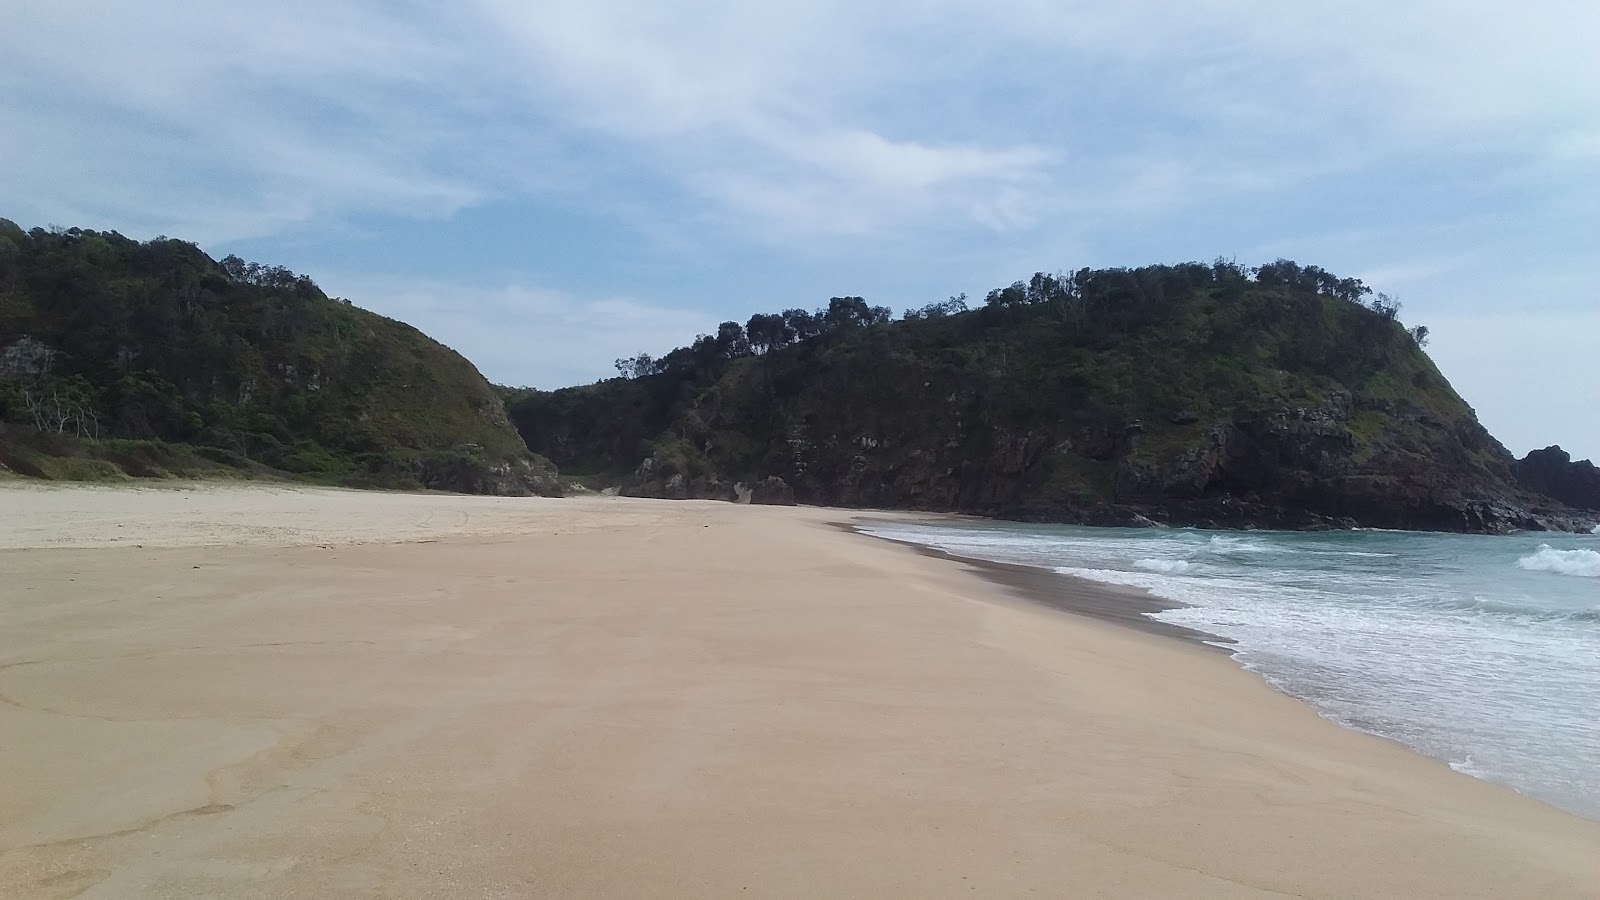 Foto de Off Leash Dog Beach - lugar popular entre os apreciadores de relaxamento